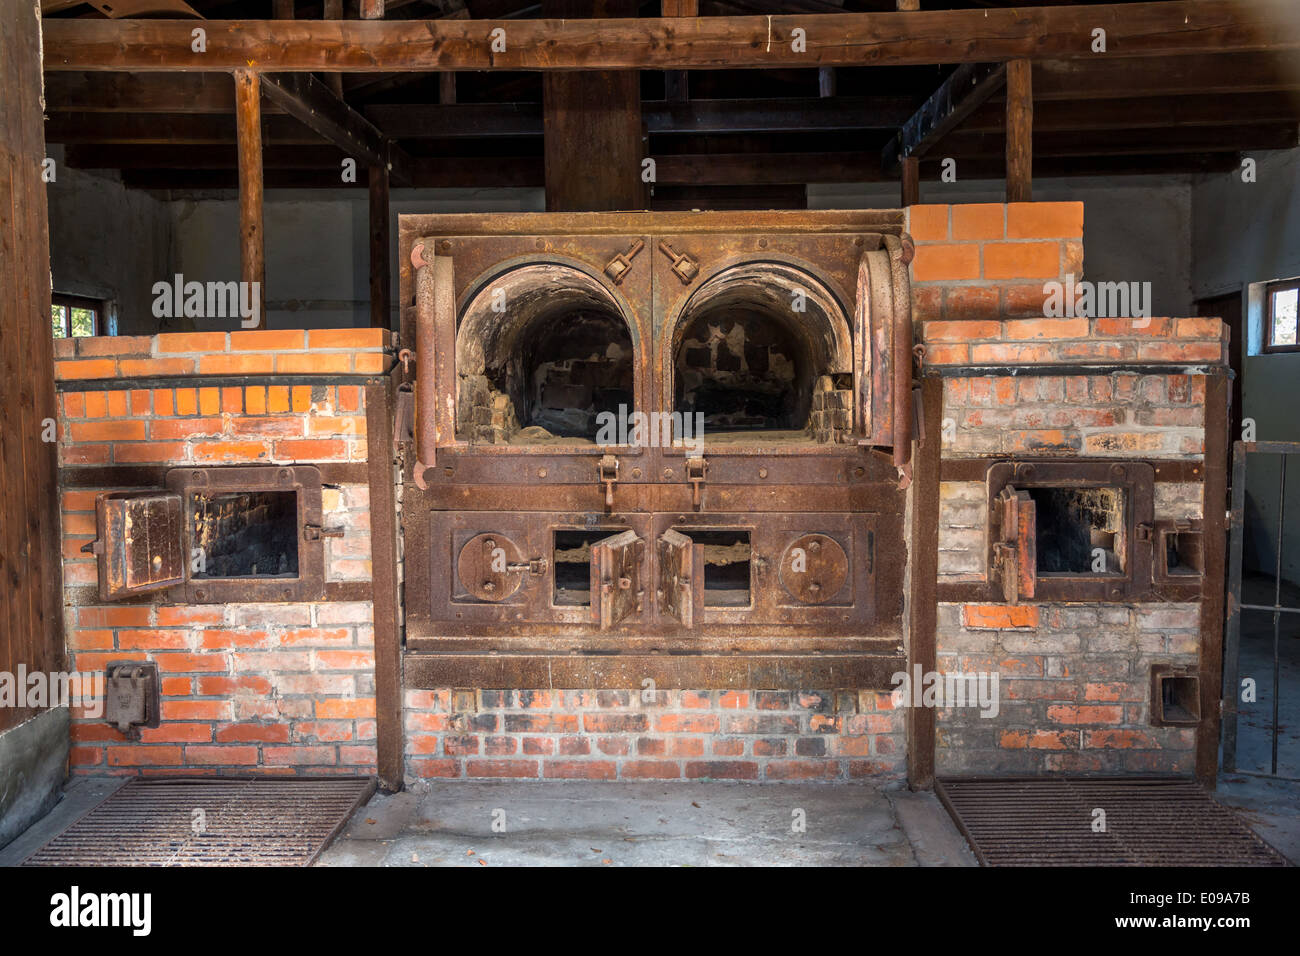 Dachau crematorium. Stock Photo